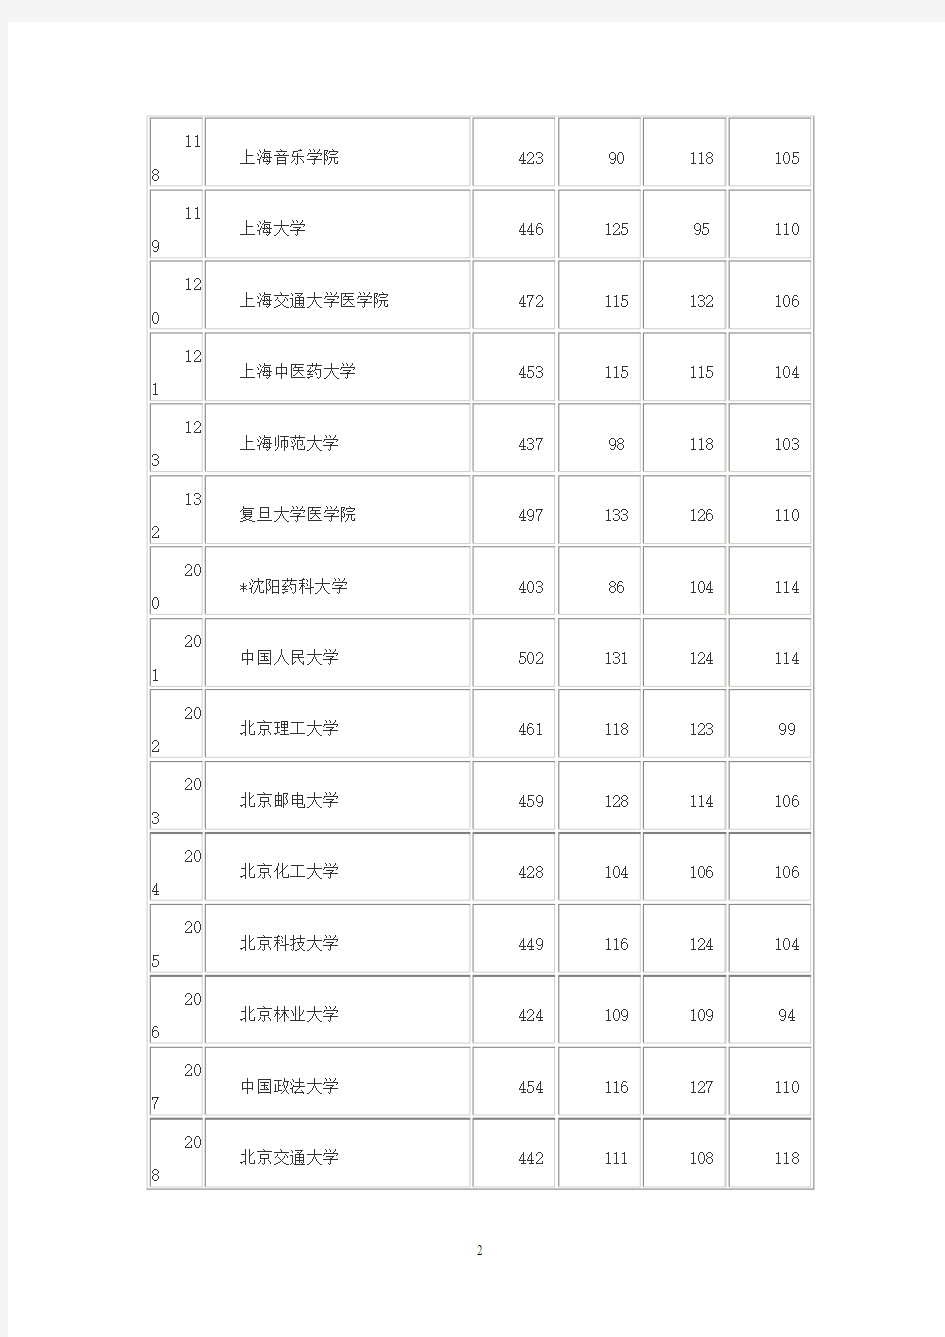 132所大学2014年在上海录取分数线